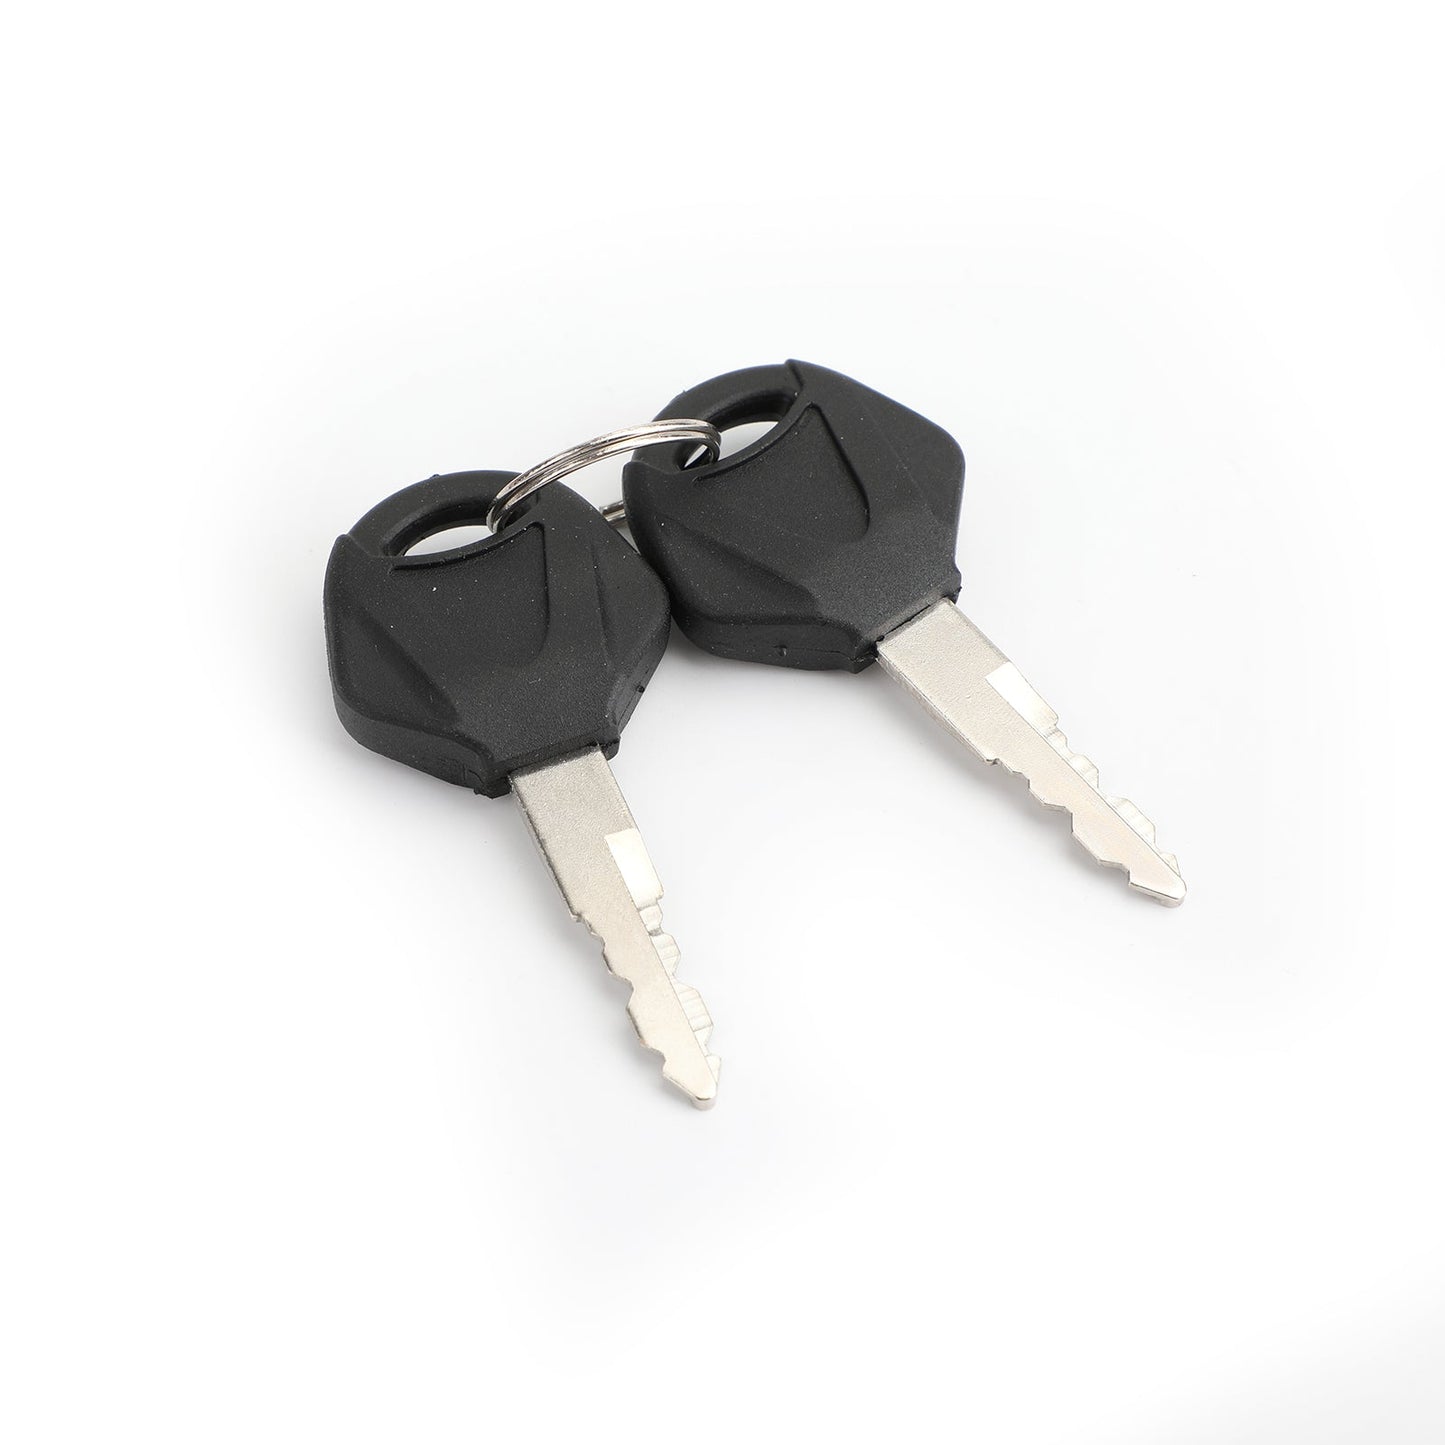 Ignition Switch Lock ; Keys Kit Fit For Suzuki GW250 Inazuma 14-17 GSXR250 13-17 37101-48860